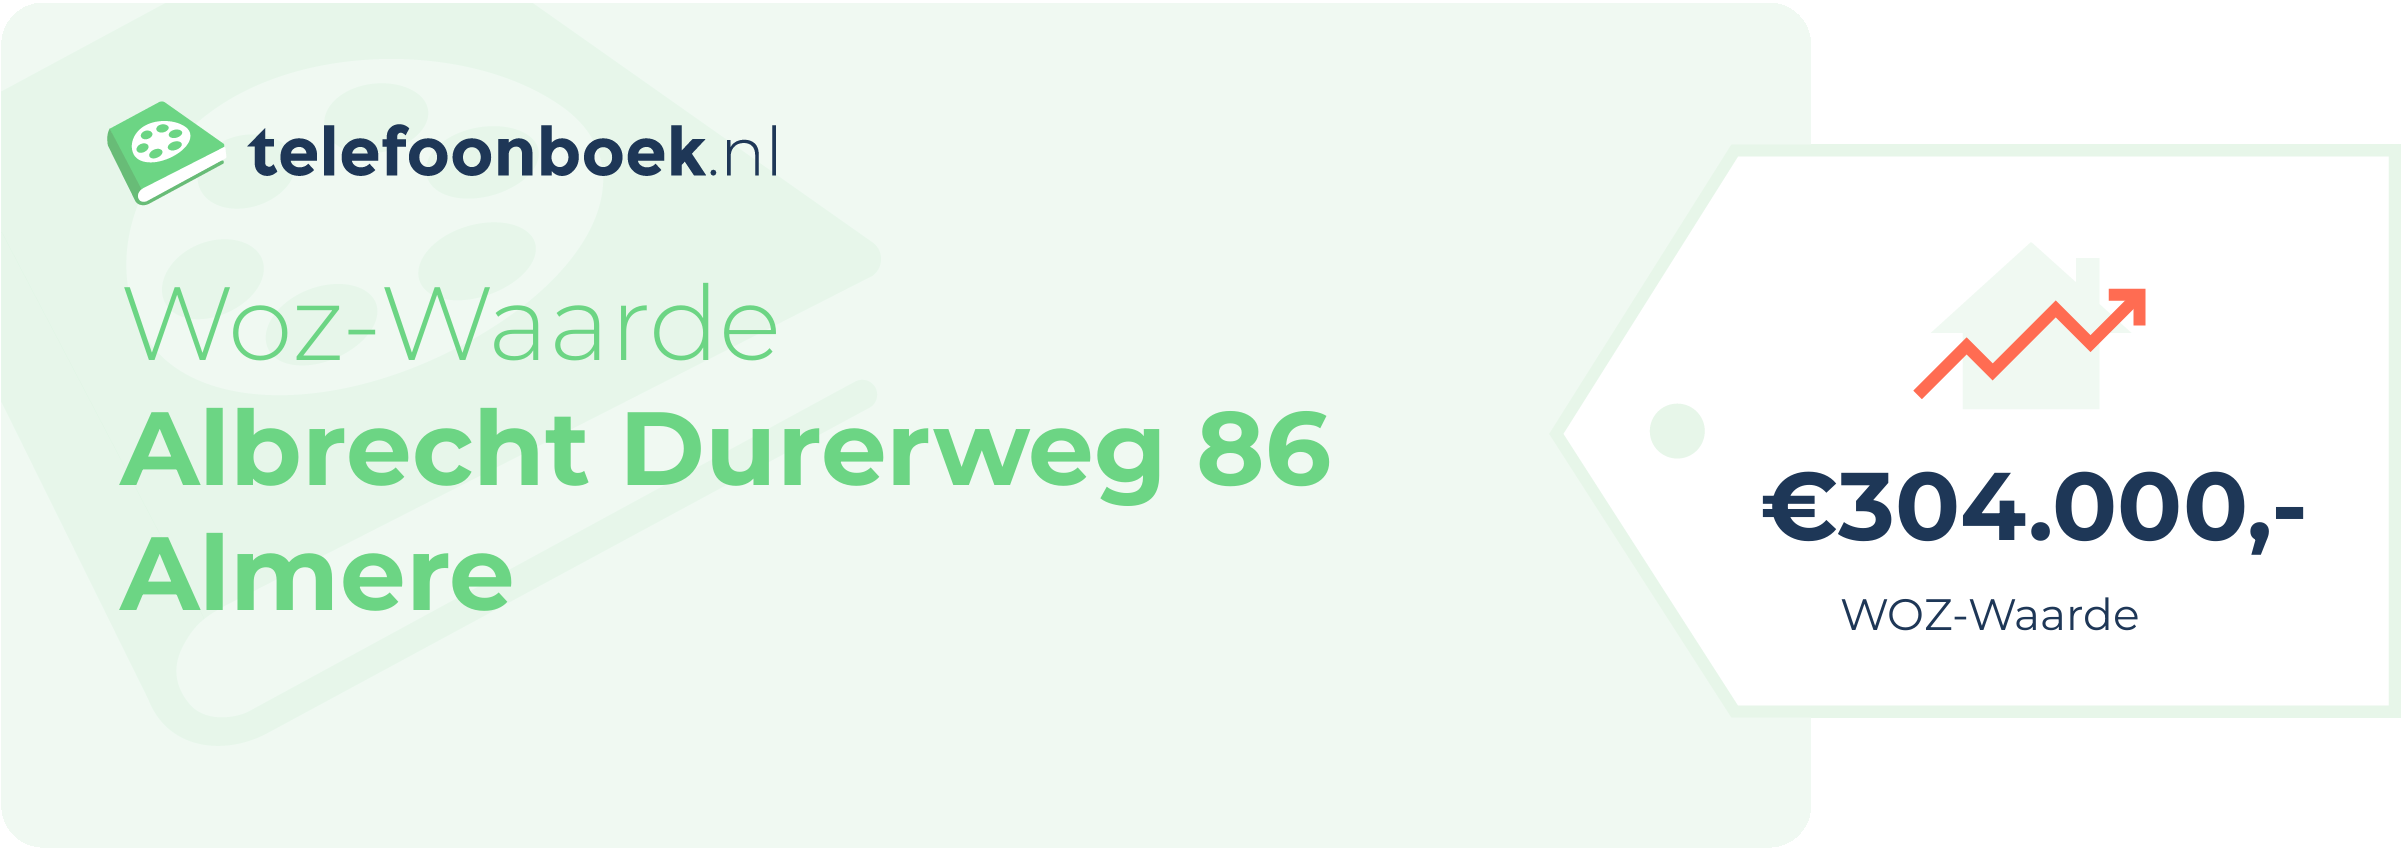 WOZ-waarde Albrecht Durerweg 86 Almere